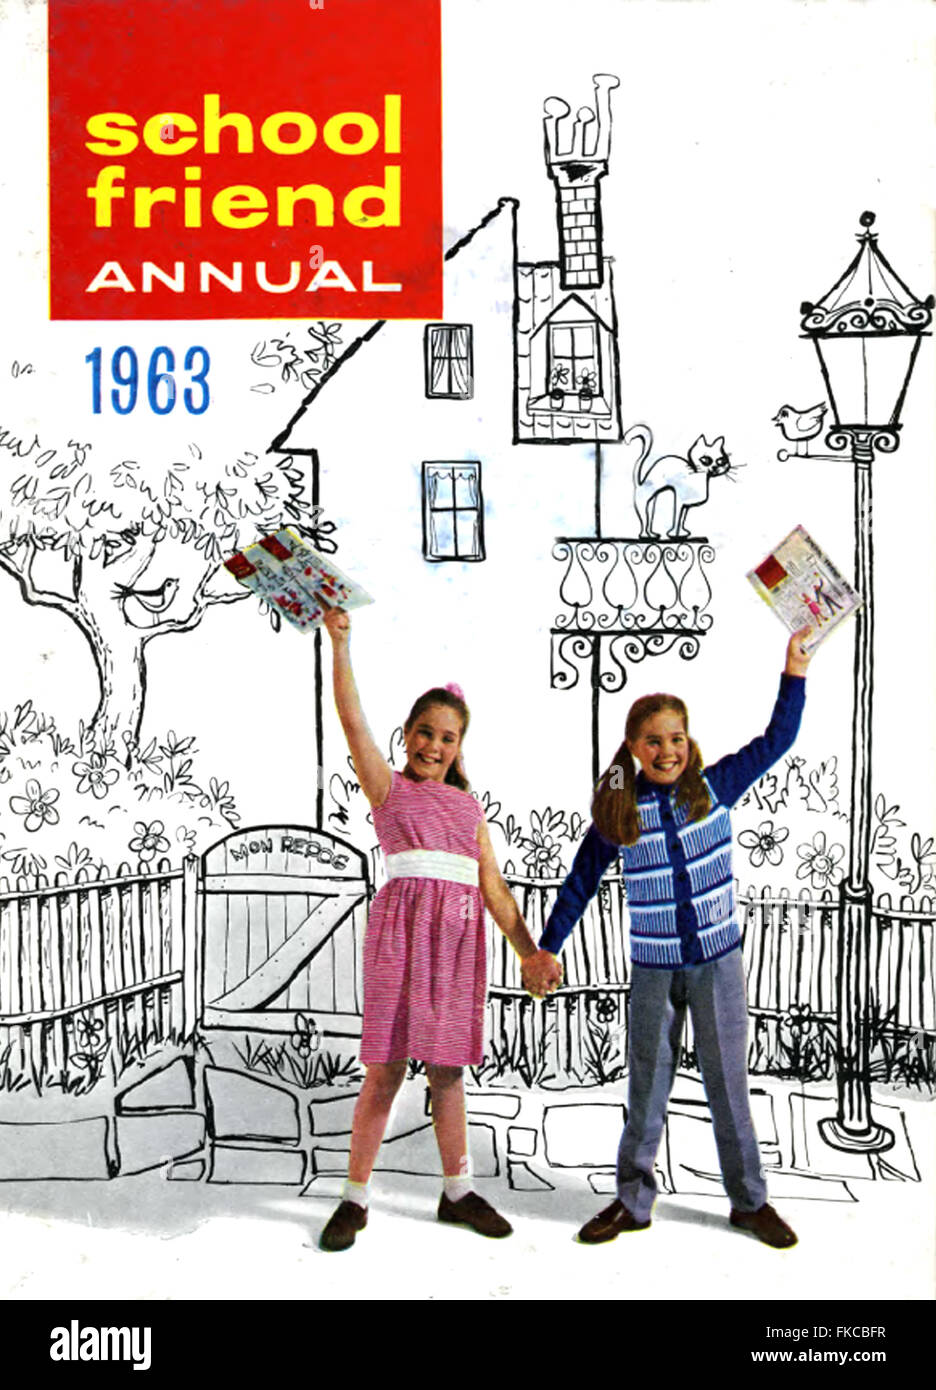 1960s UK School Friend Annual Annual Cover Stock Photo